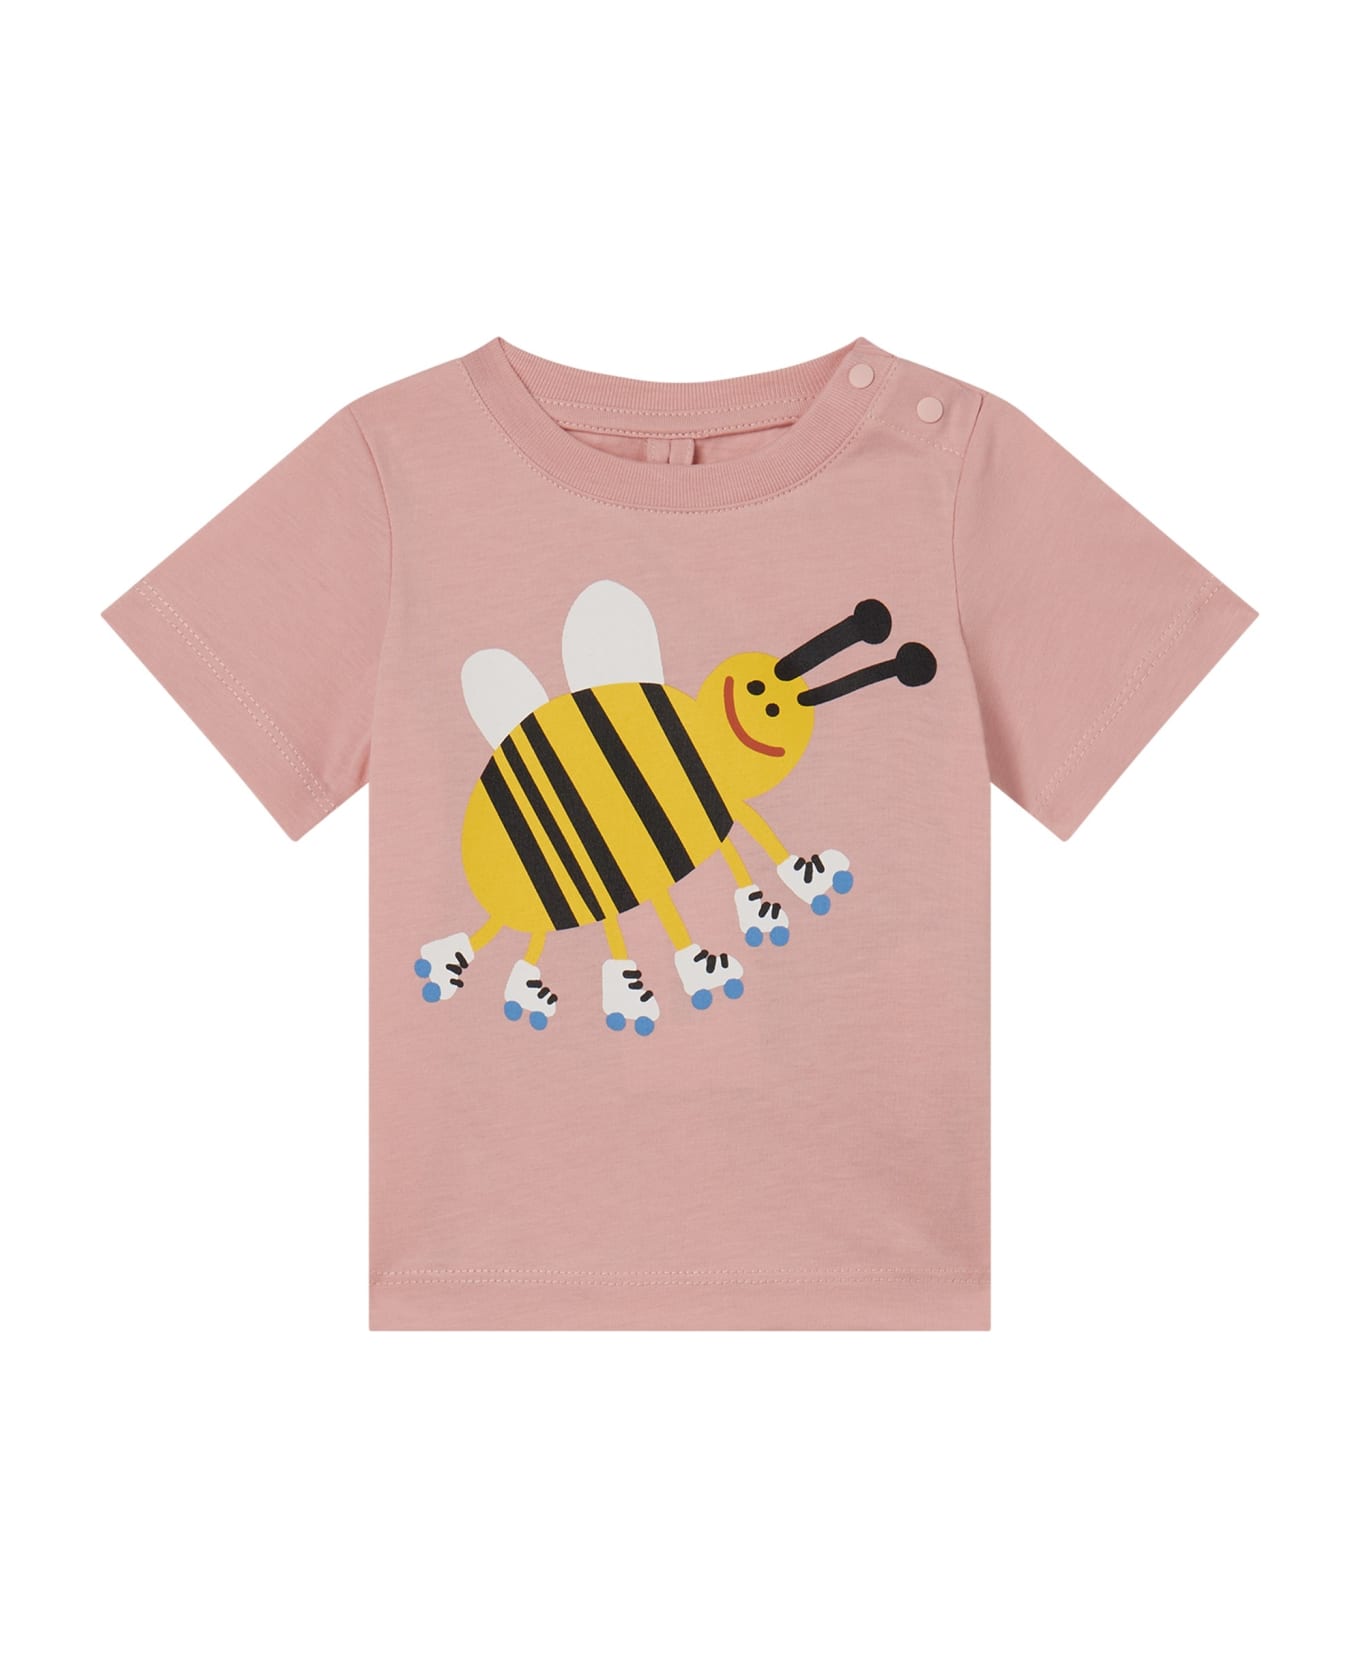 Stella McCartney Kids T-shirt With Print - Lilla